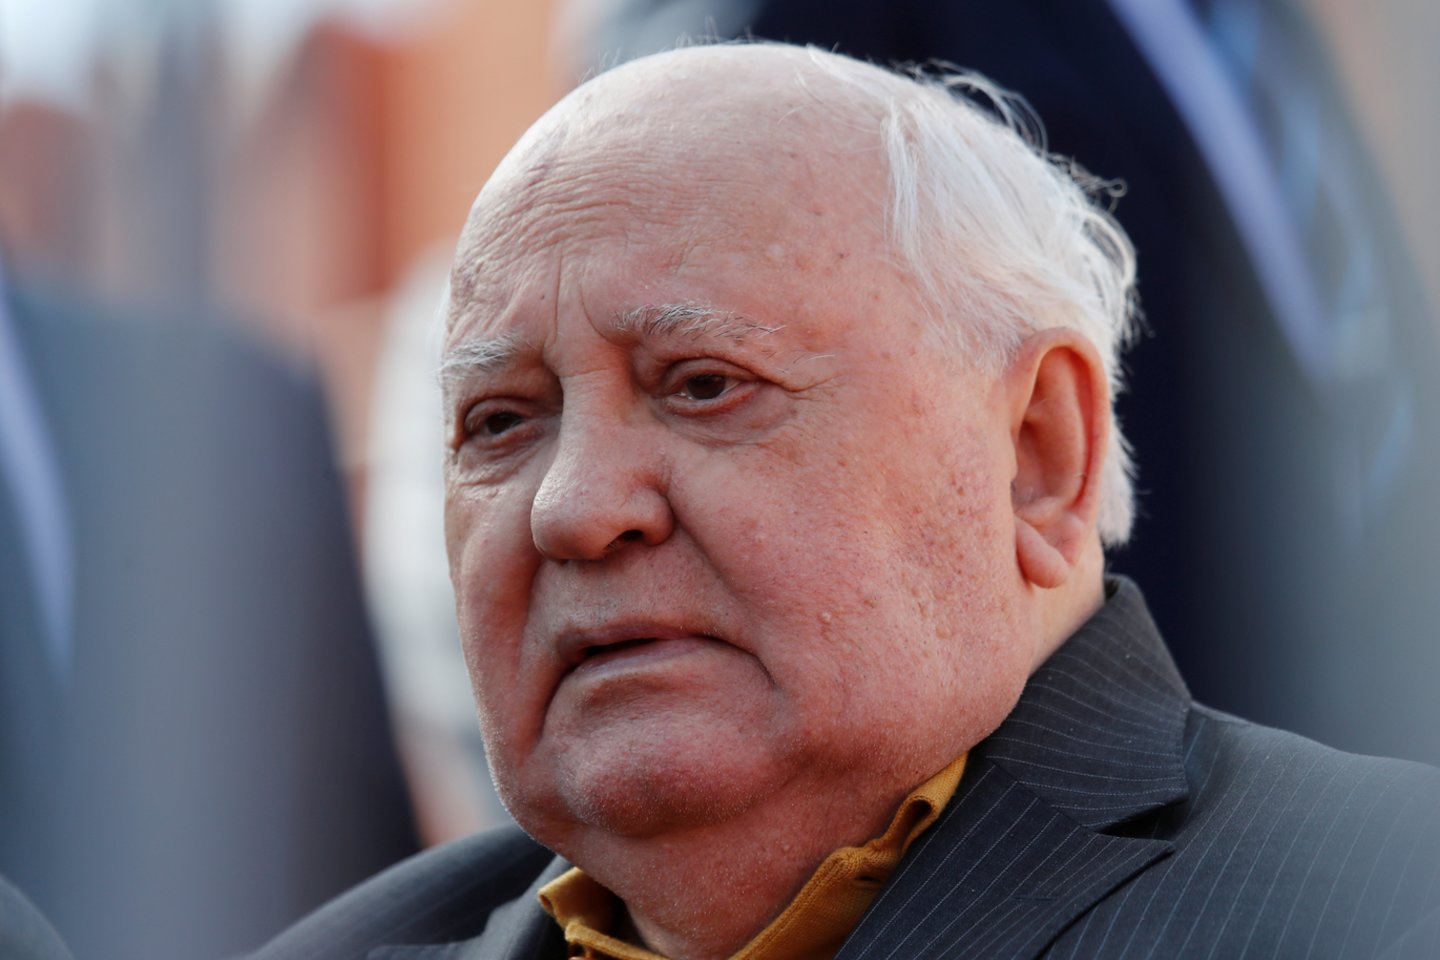 Buvęs Sovietų Sąjungos prezidentas Michailas Gorbačiovas.<br>REUTERS/Scanpix nuotr.